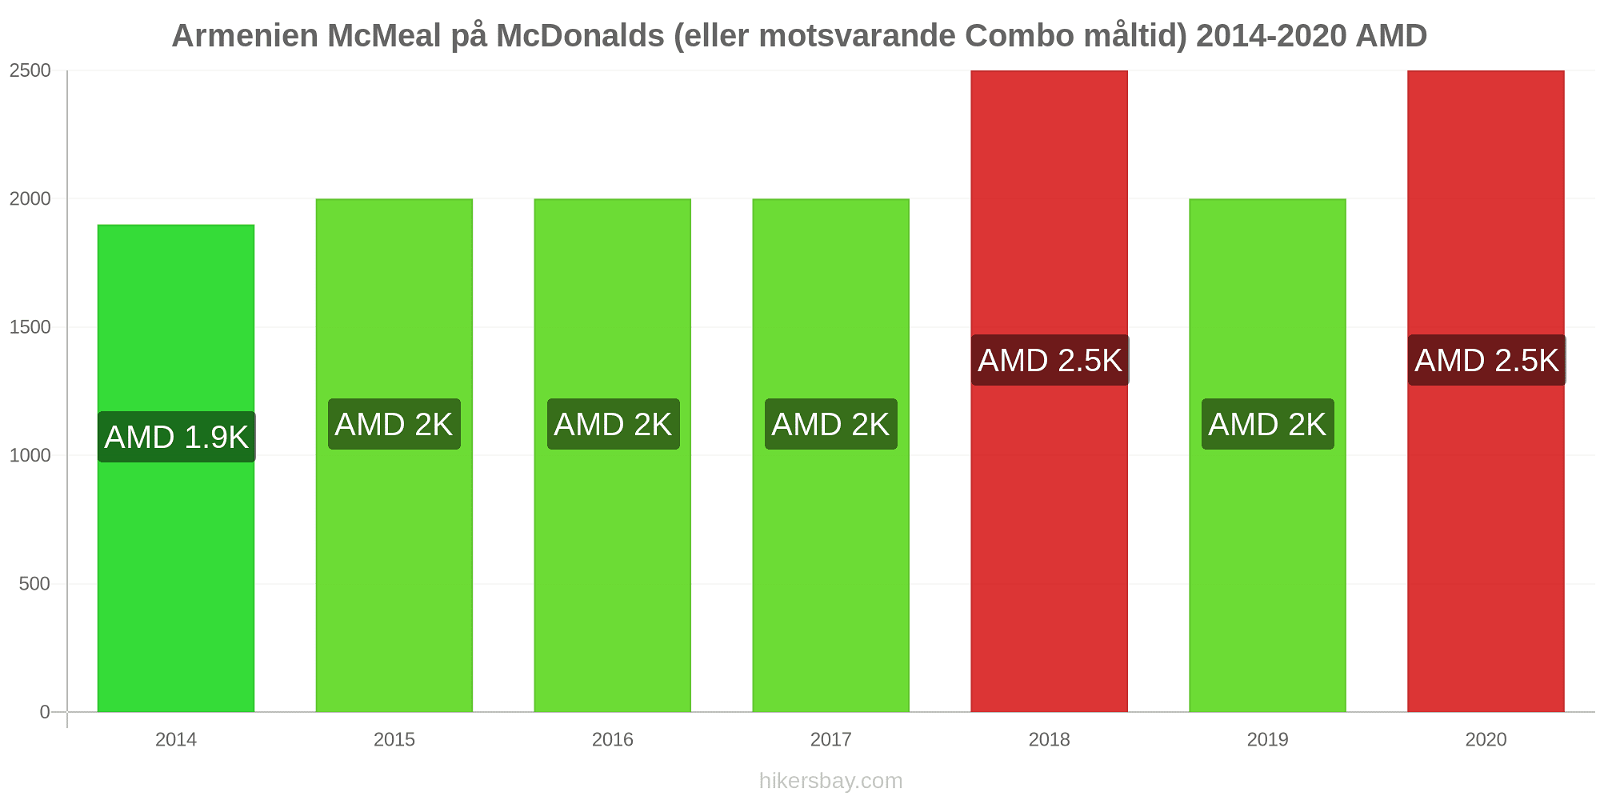 Armenien prisförändringar McMeal på McDonalds (eller motsvarande Combo måltid) hikersbay.com